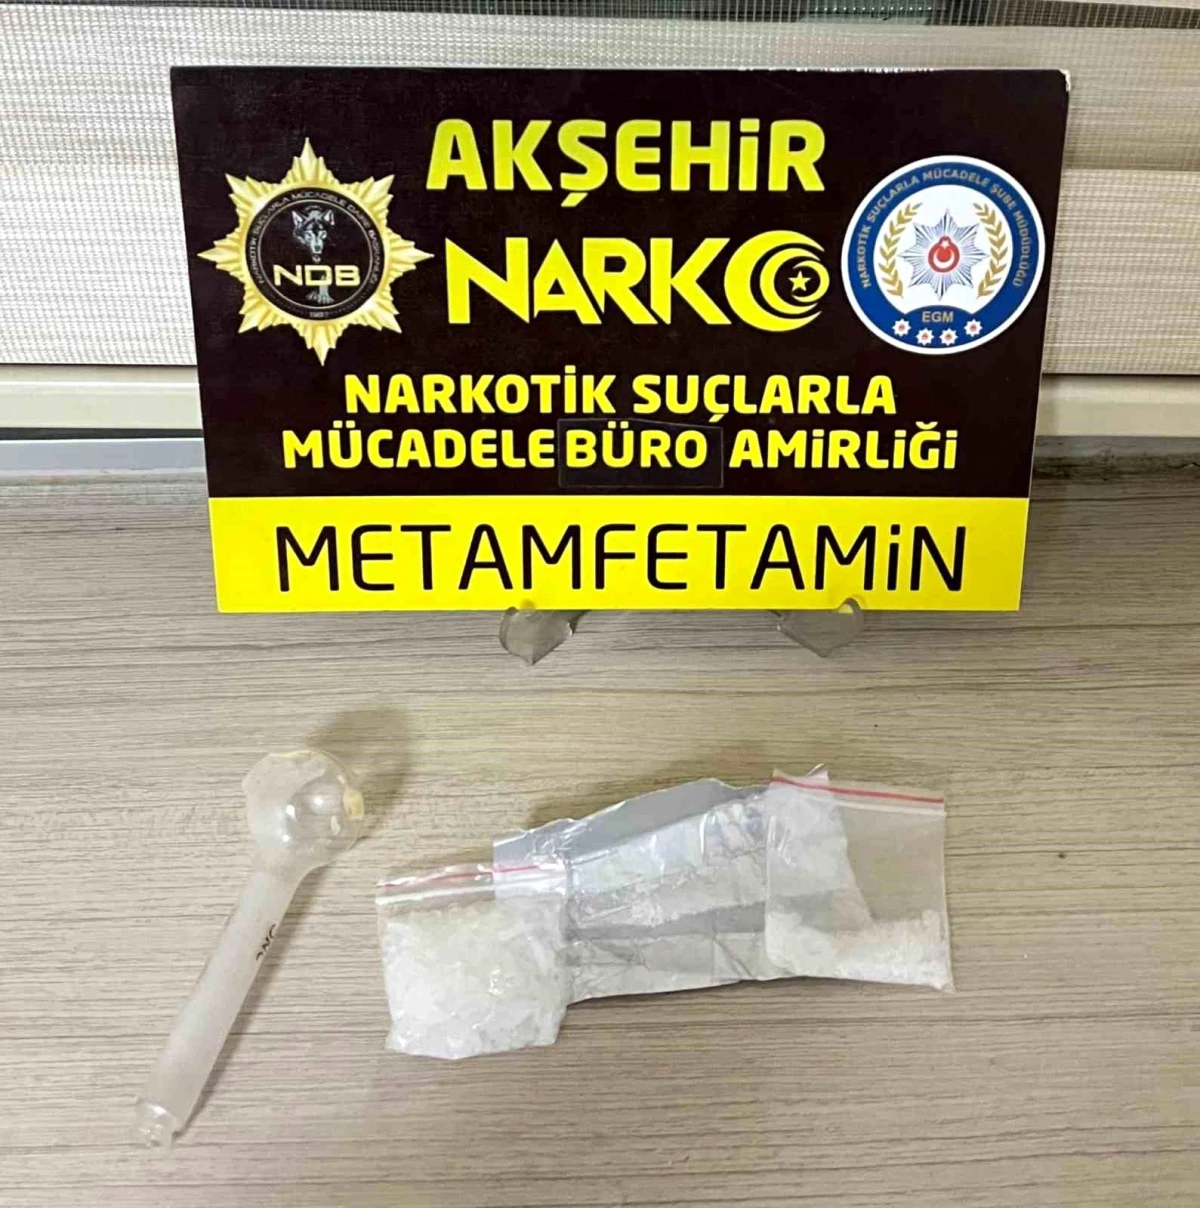 Akşehir’de Uyuşturucu Operasyonu: Şahısların Üzerinde ve Araçta Uyuşturucu Madde Ele Geçirildi